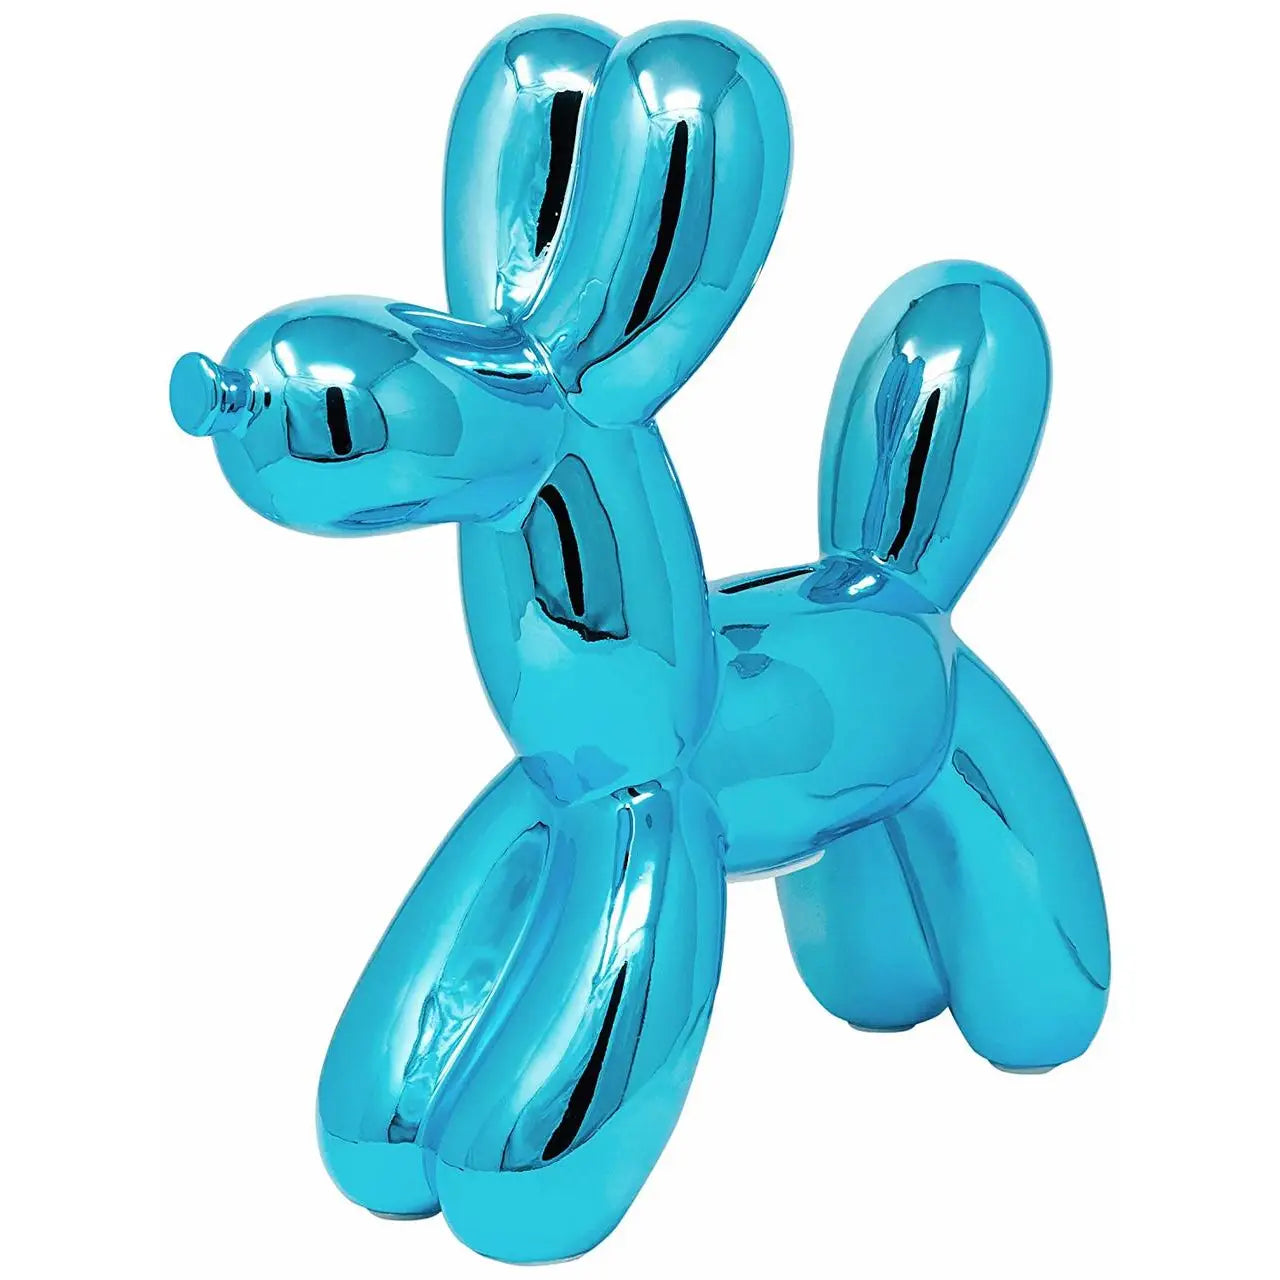 BLUE BALLOON DOG 12"